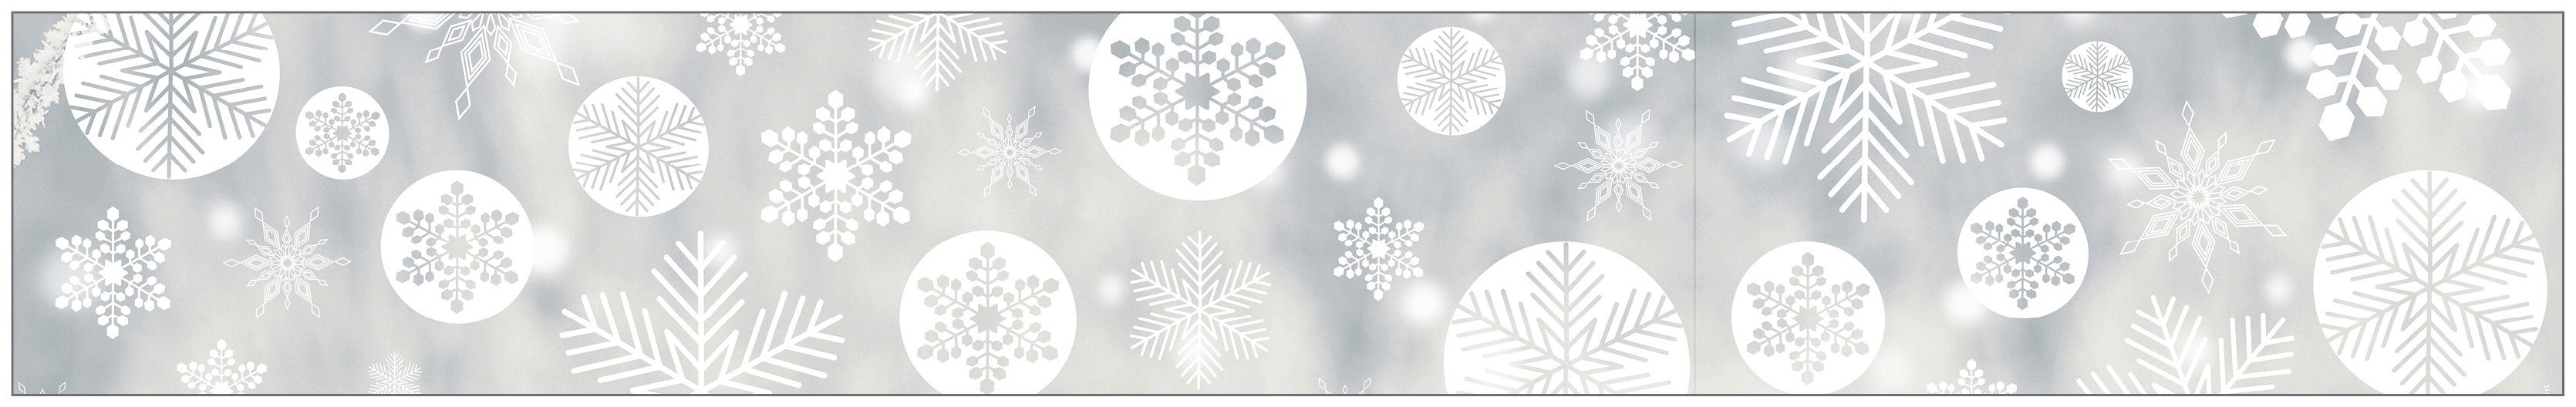 Fensterfolie Look Snowy white, MySpotti, 200 glatt, x haftend statisch halbtransparent, 30 cm